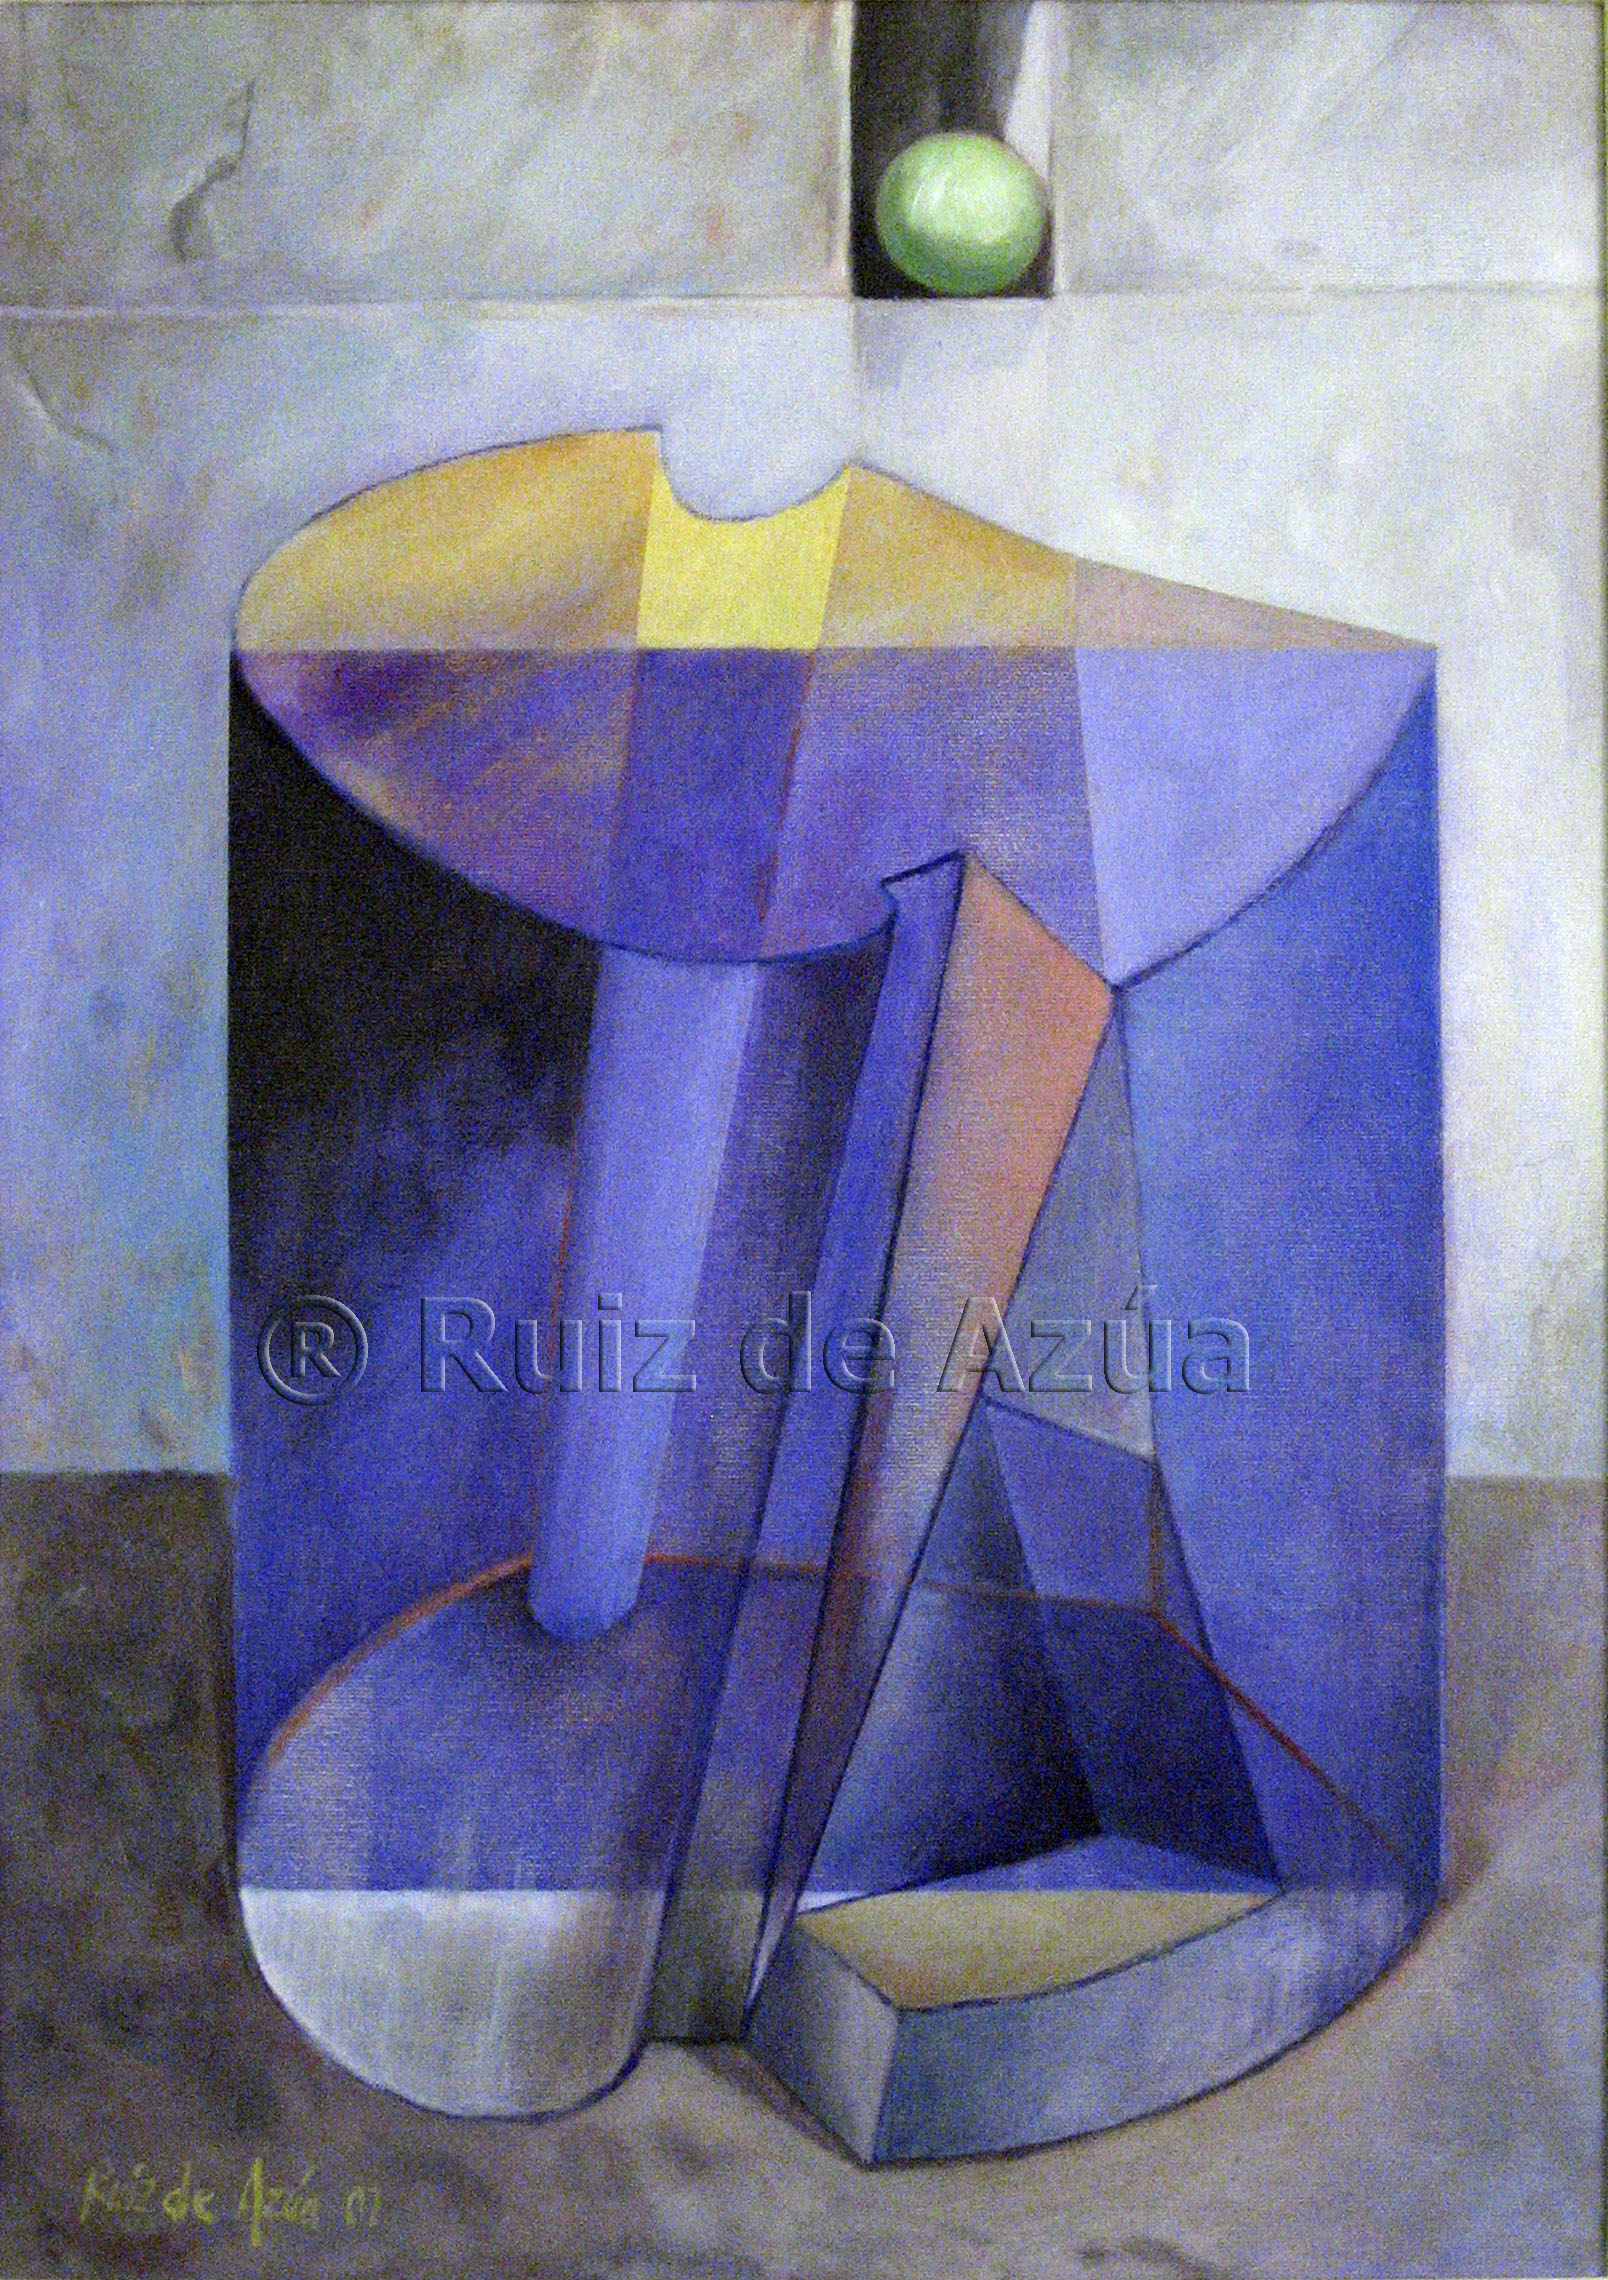 Cuadrado violeta inscrito en figura. (2001) - Juan Carlos Ruiz de Azúa López de Arróyabe